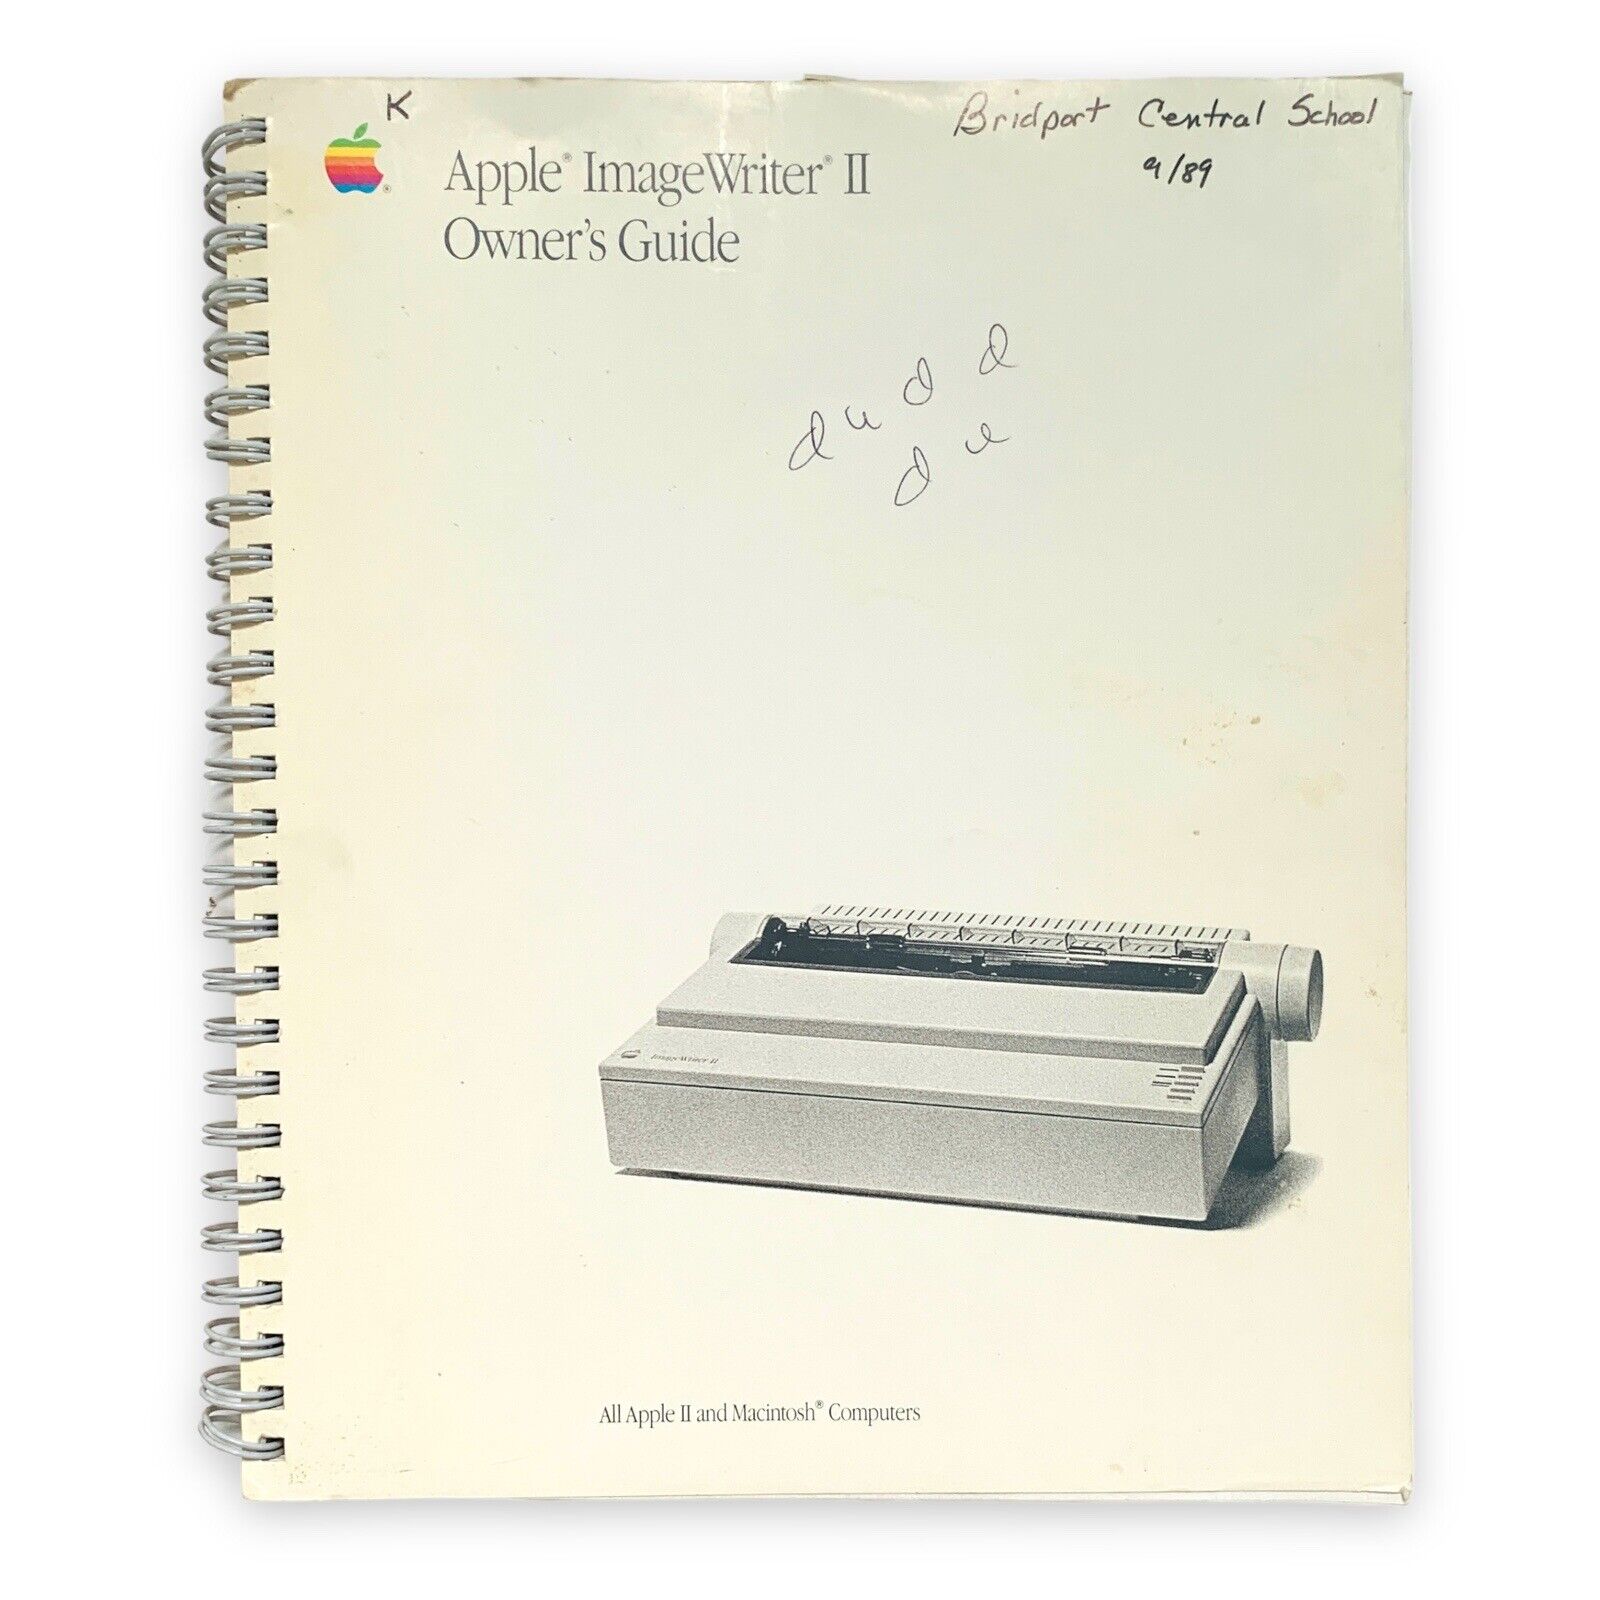 Apple ImageWriter II Owner’s Guide VTG 1988 